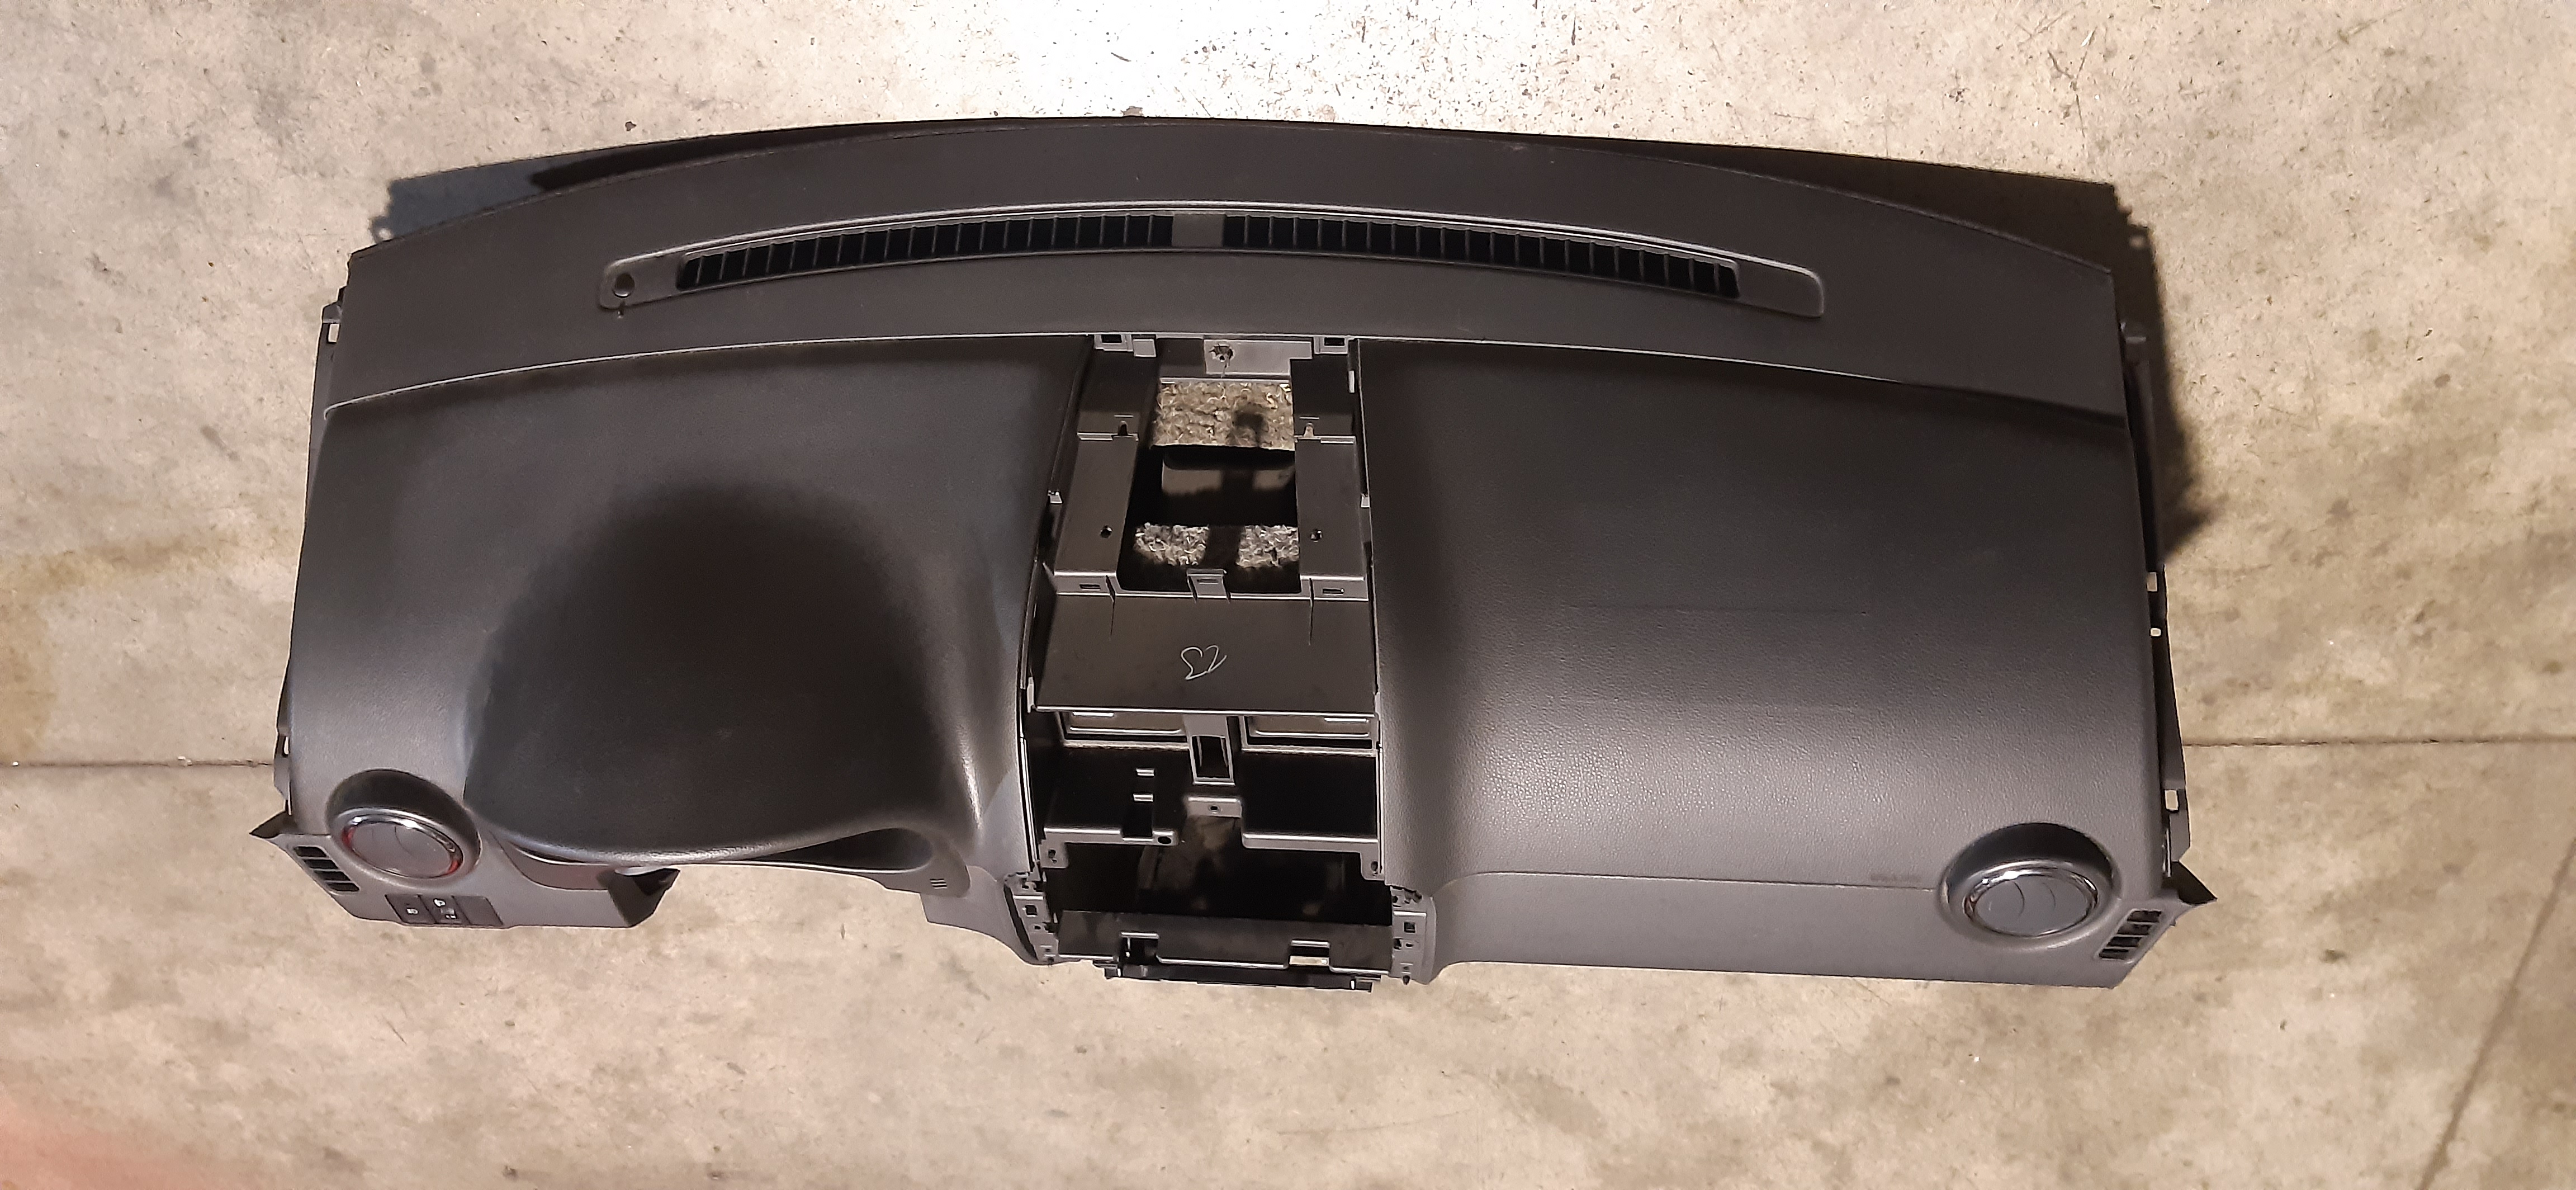 Cruscotto nudo senza airbag con bocchette areazione Fiat 16 2.0MJ 2013 5P 